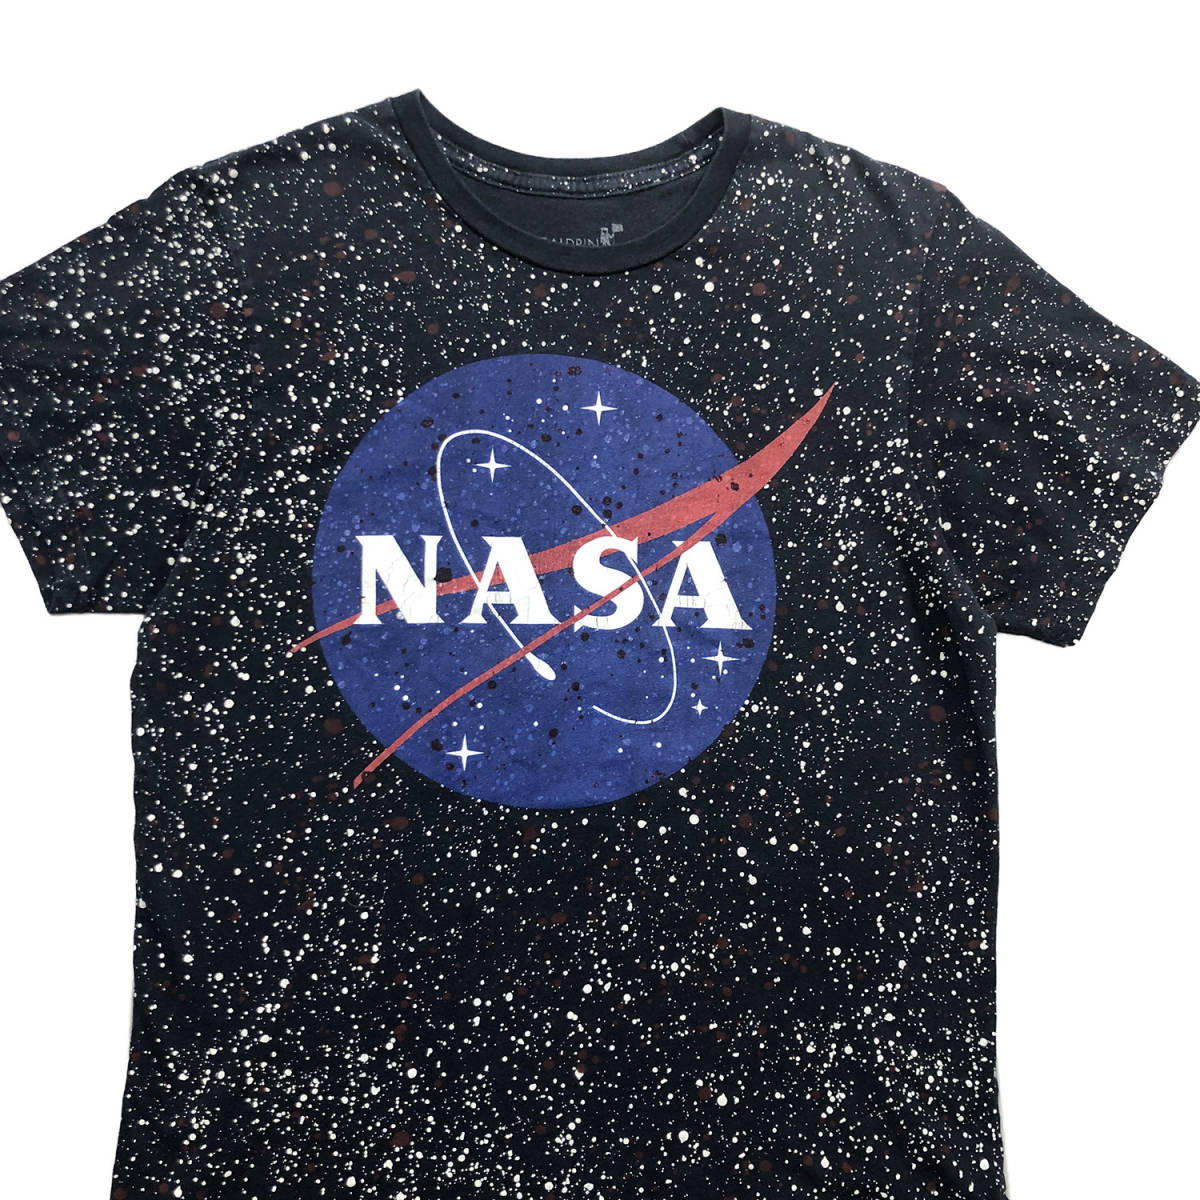 USA 古着 NASA アメリカ航空宇宙局 スプラッシュ柄 クルーネック ロゴプリント Tシャツ メンズS BA2307